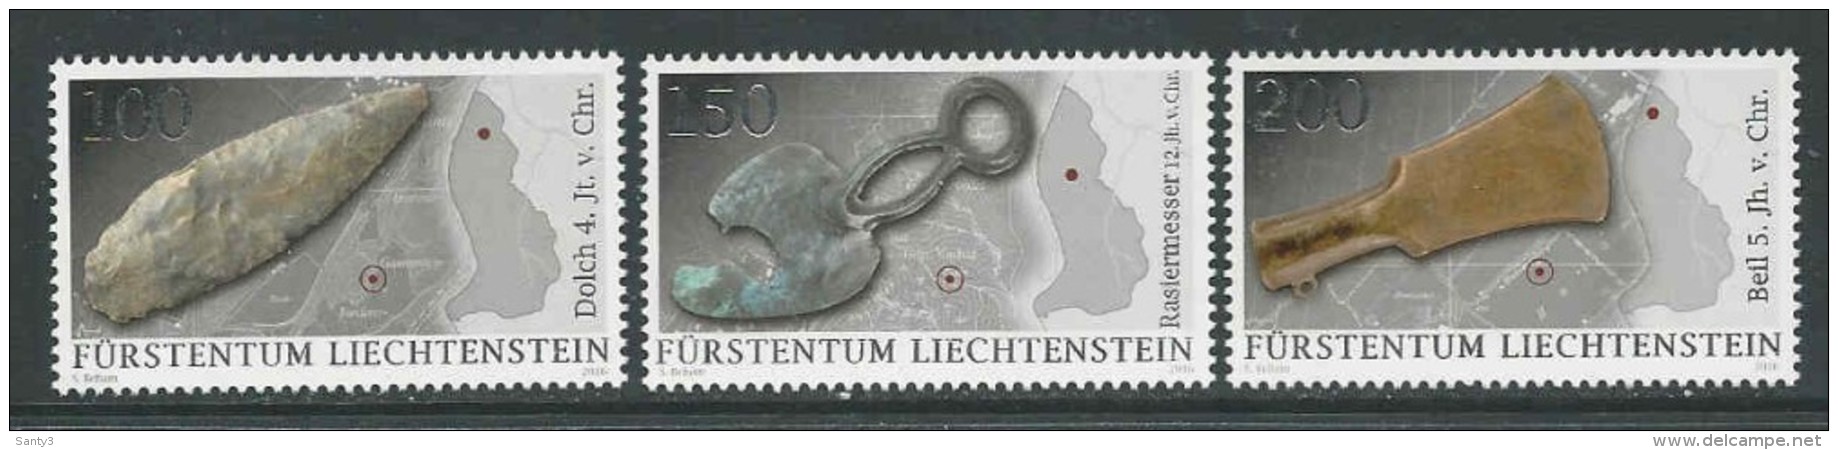 Liechtenstein, Mi Jaar 2016, Reeks,  Postfris (MNH) Zie Scan - Neufs